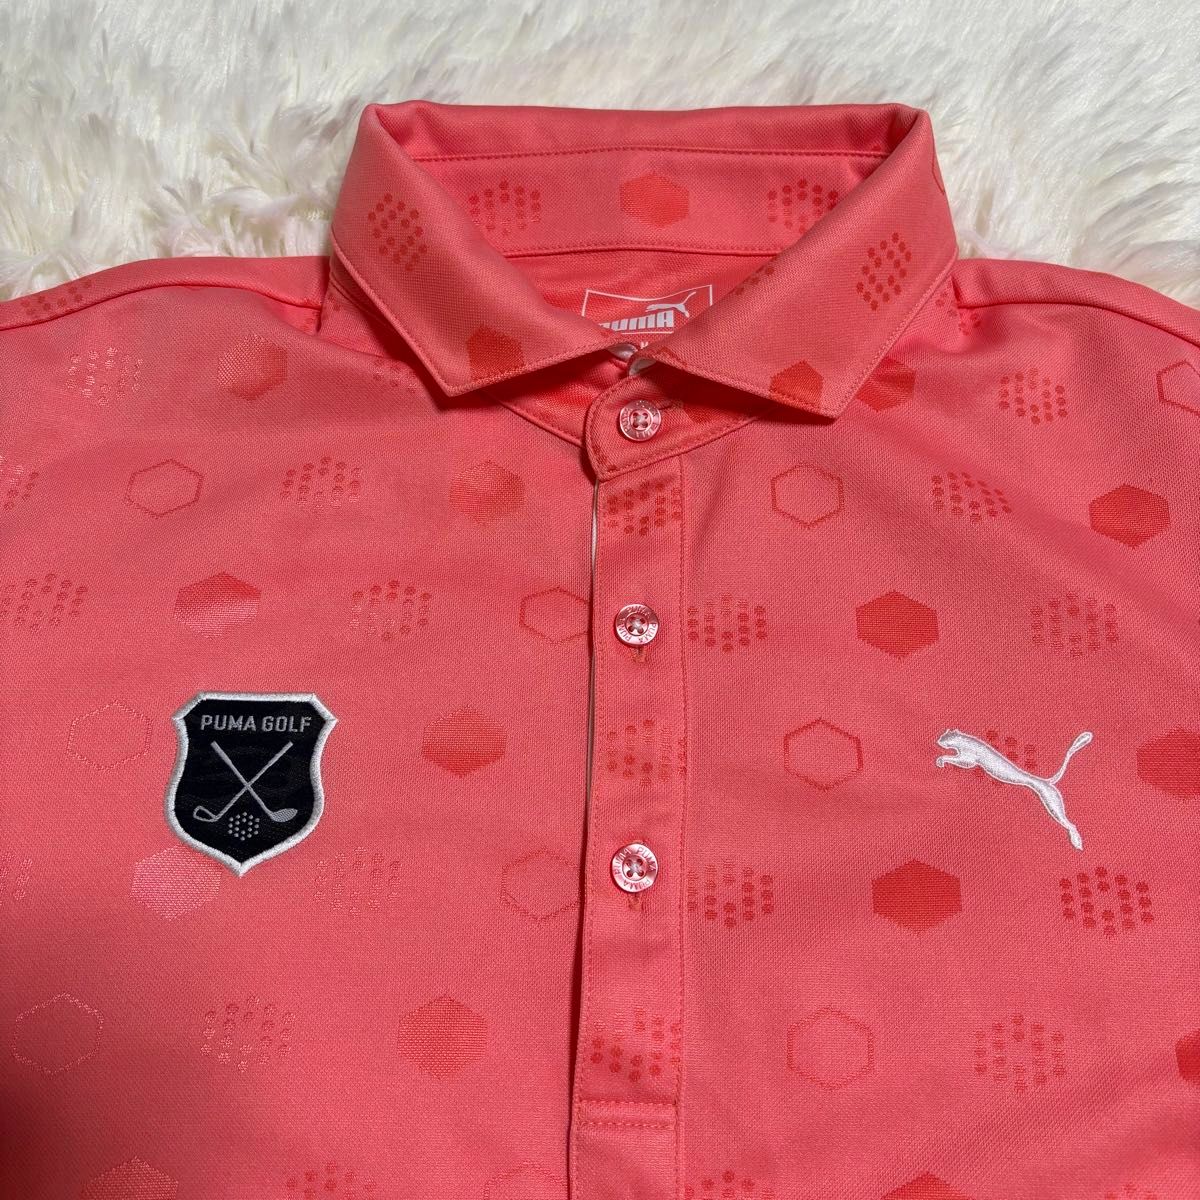 【美品】PUMA GOLFゴルフウェア 半袖ポロシャツ メンズ サーモンピンク